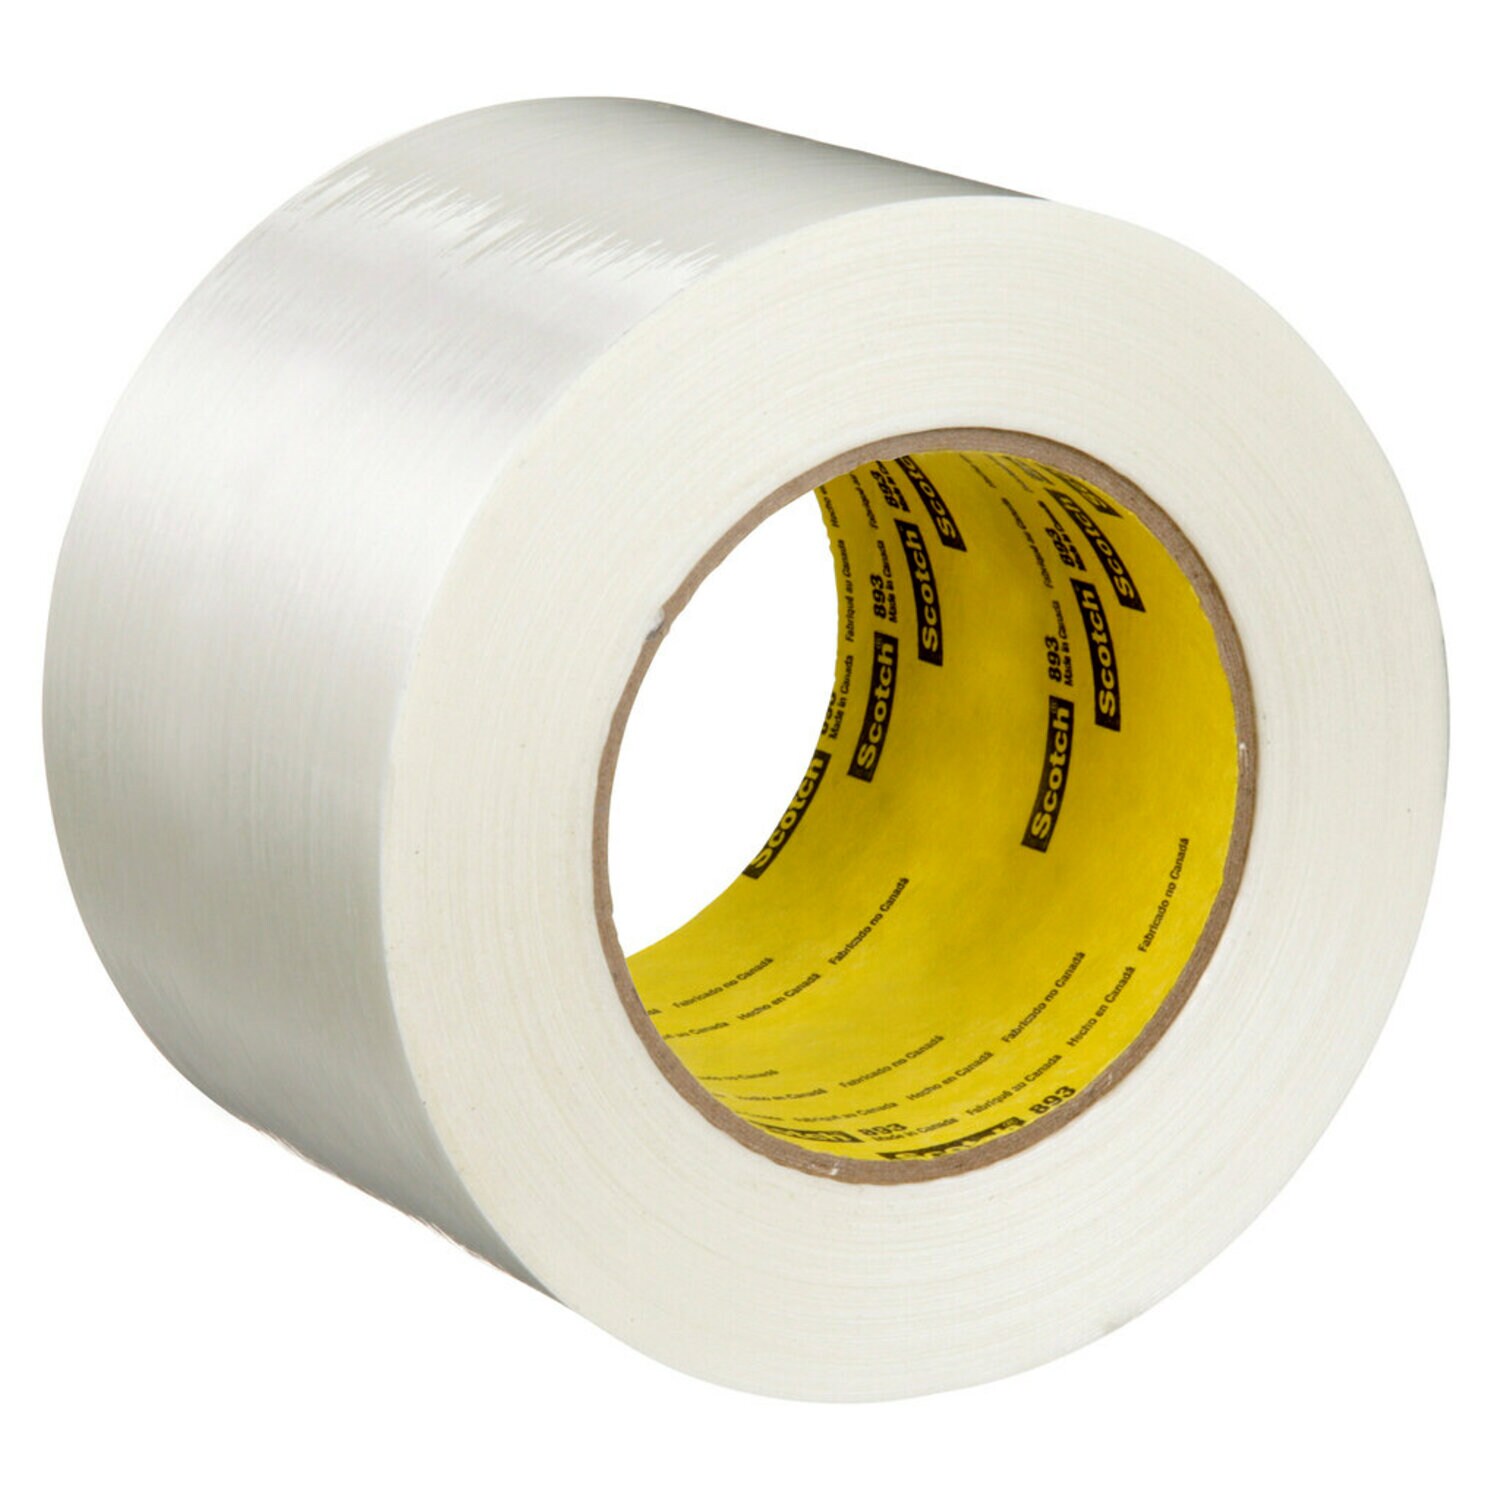 7000136866 - Scotch Filament Tape 893, Clear, 72 mm x 55 m, 6 mil, 12 rolls per case